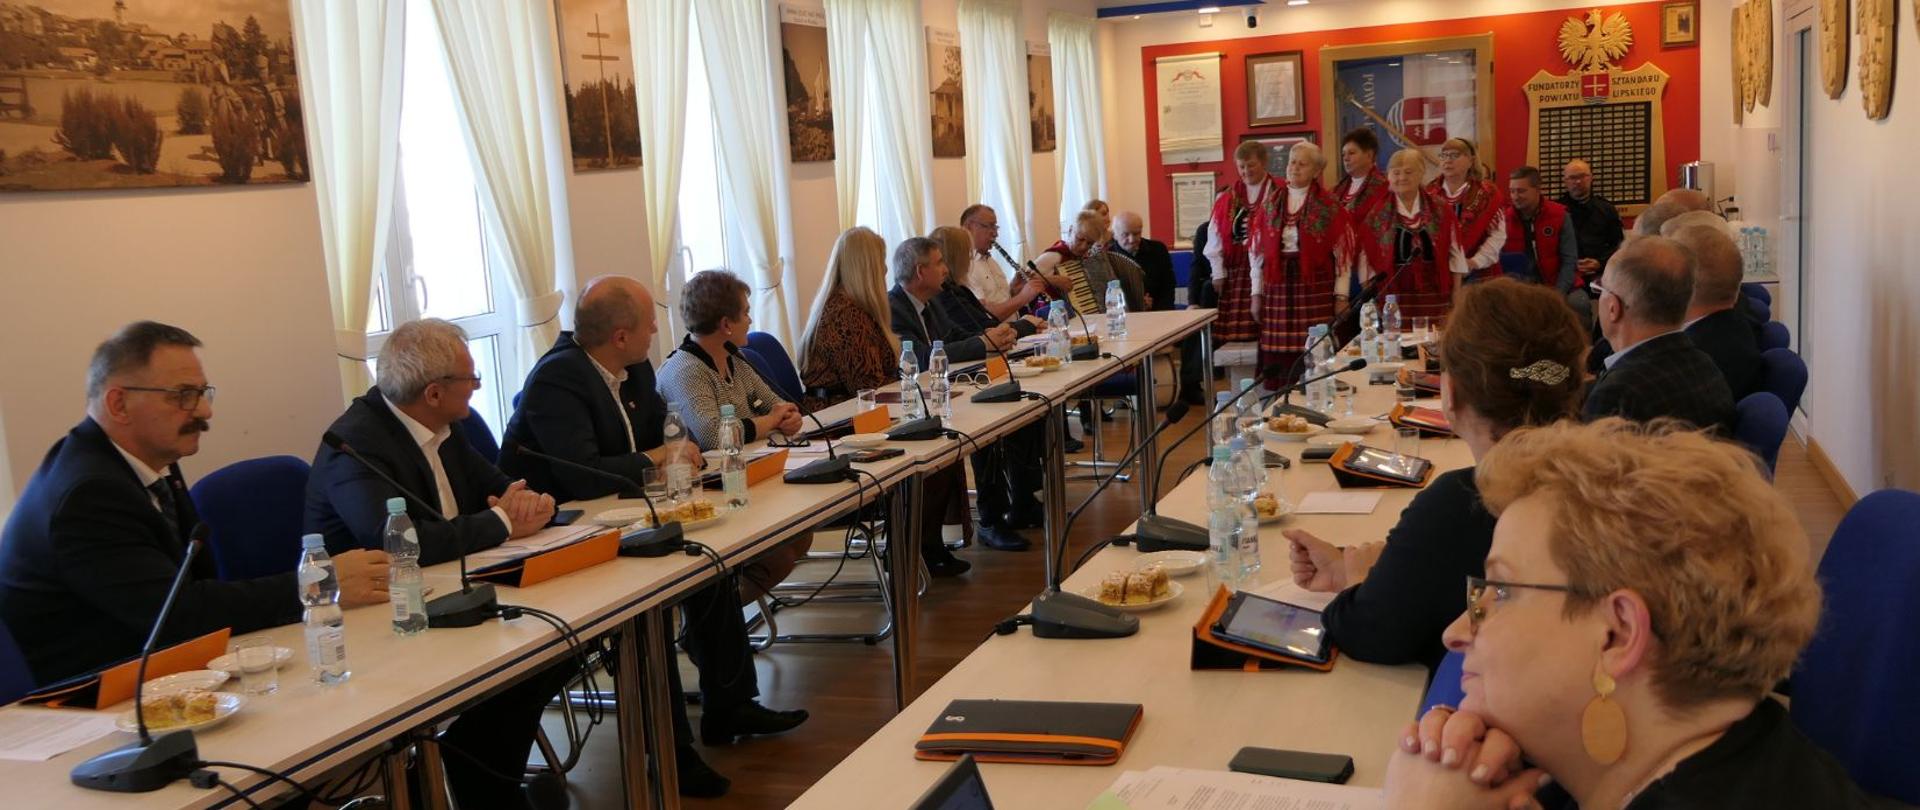 Radni Powiatu Lipskiego siedzą przy stole i wsłuchują się w występ Koła Gospodyń Wiejskich Tymienianki